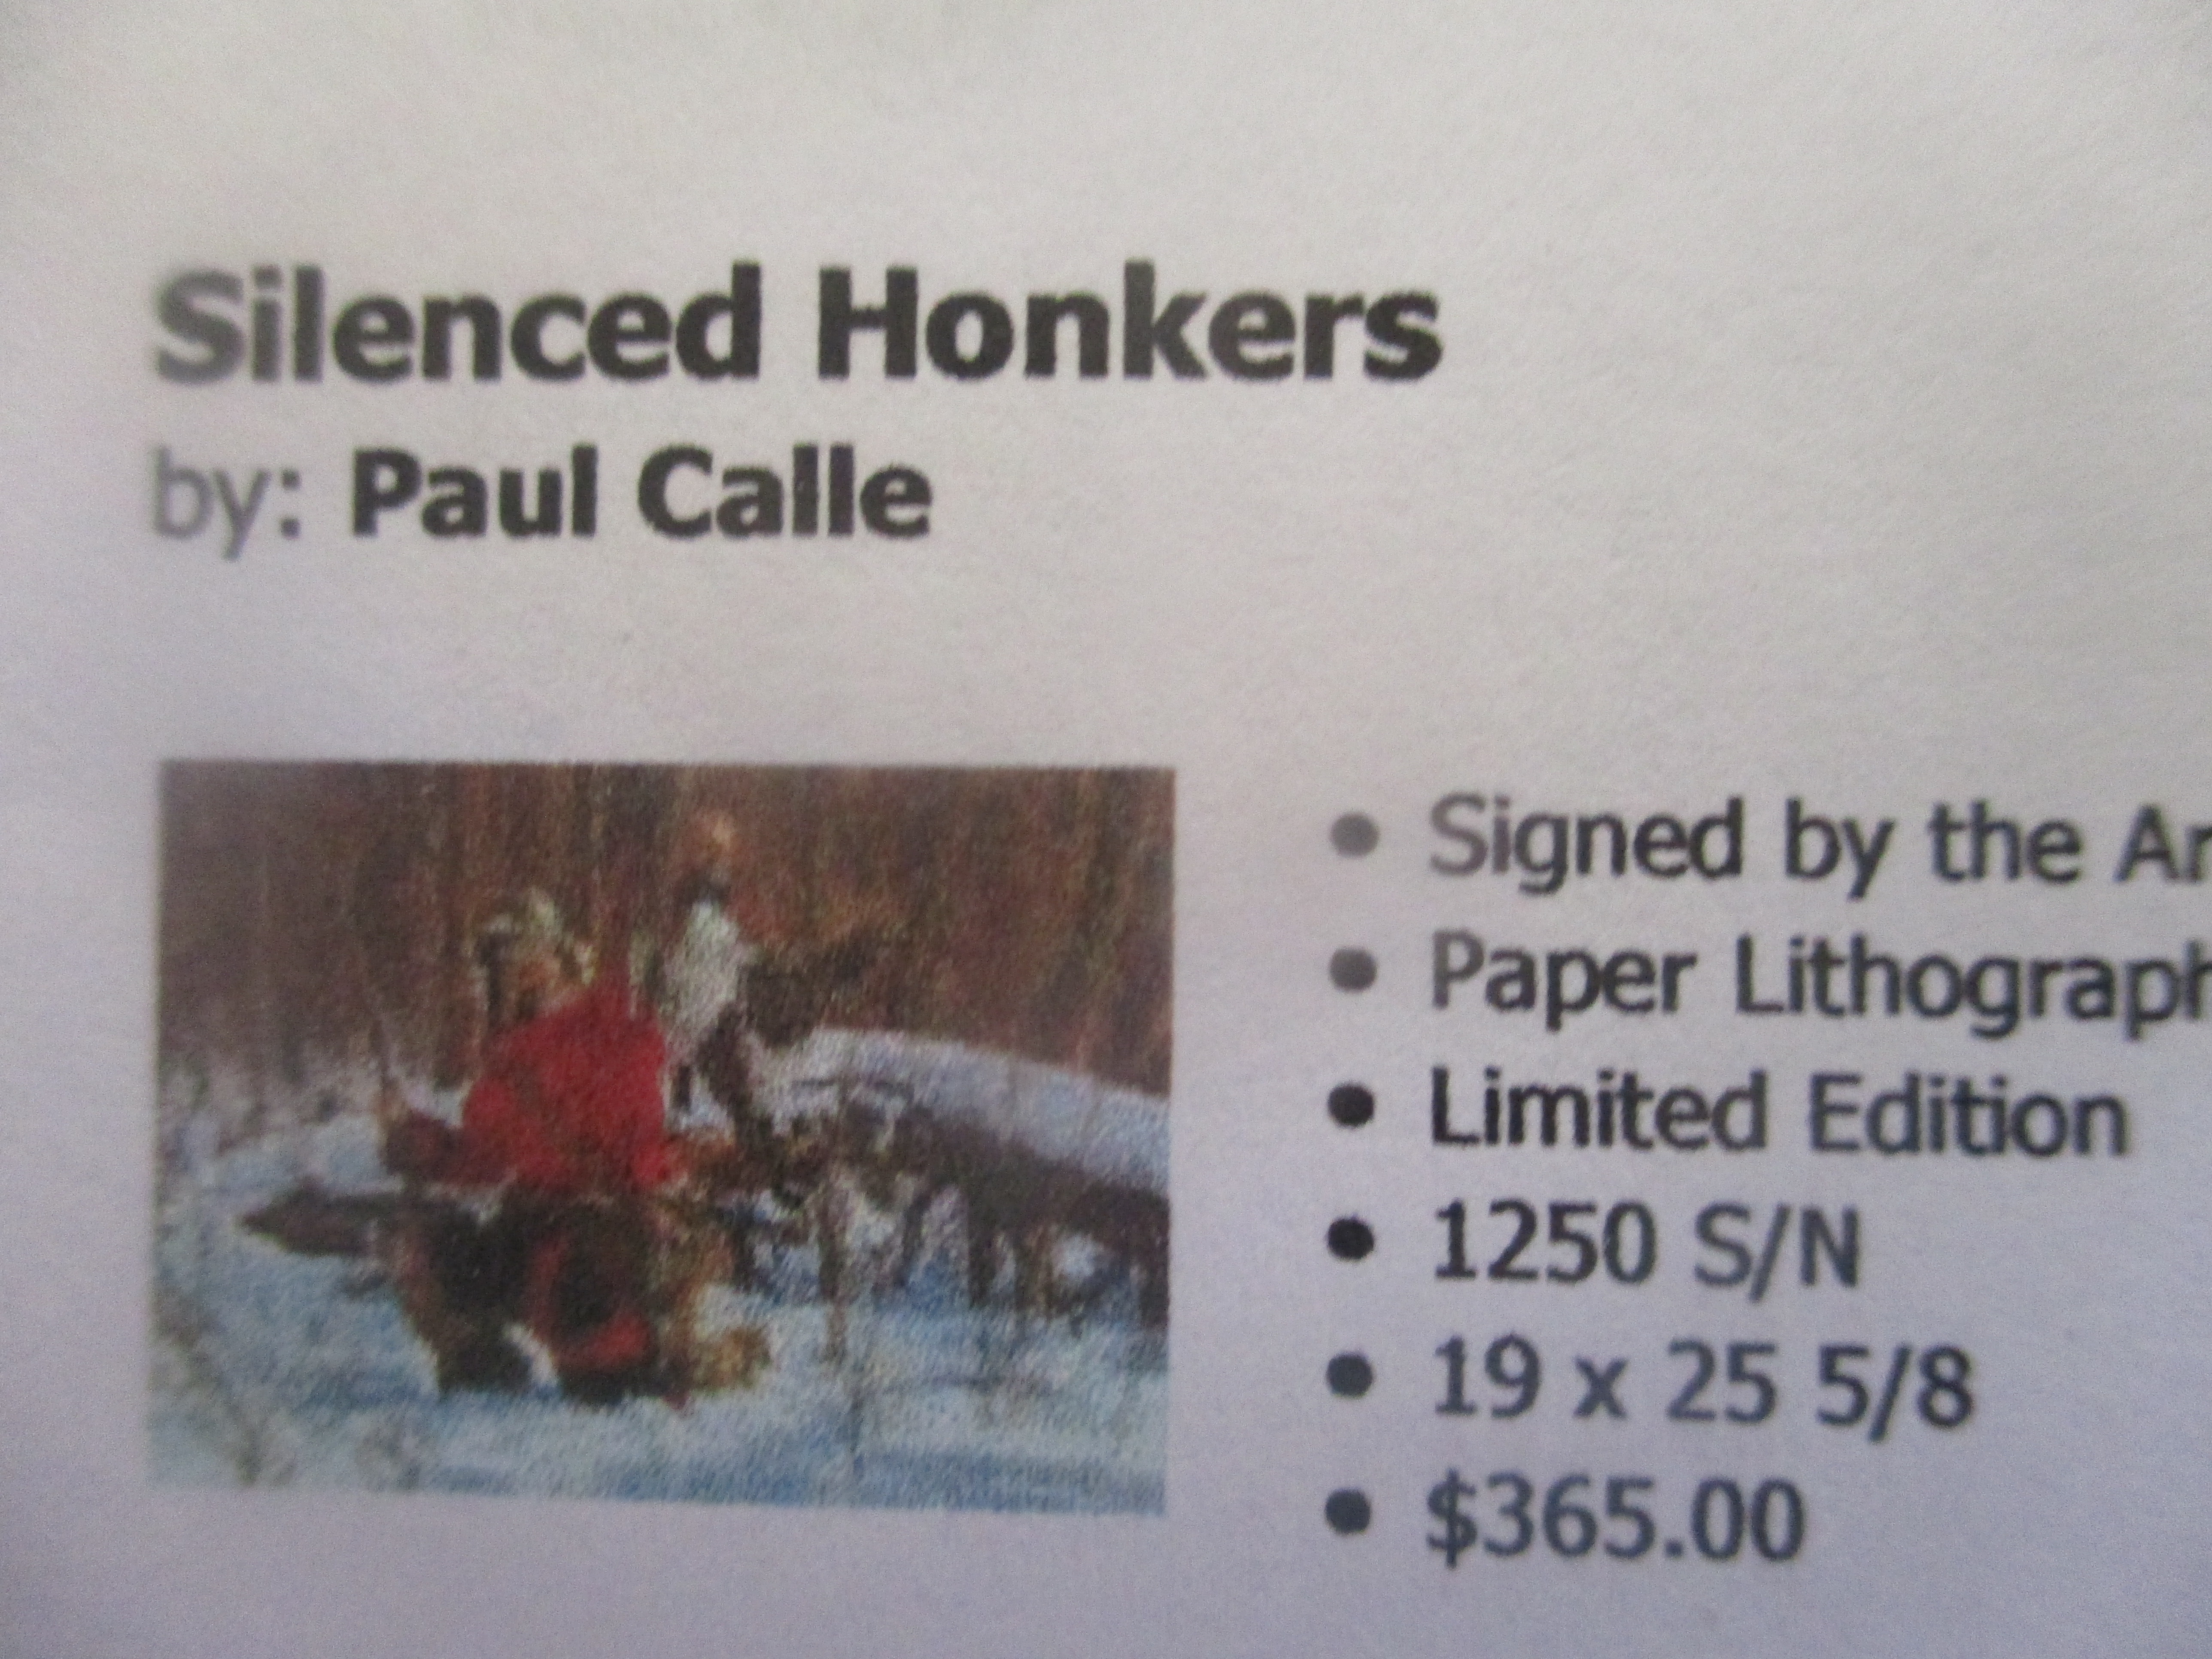 Silenced honkers by Paul Calle